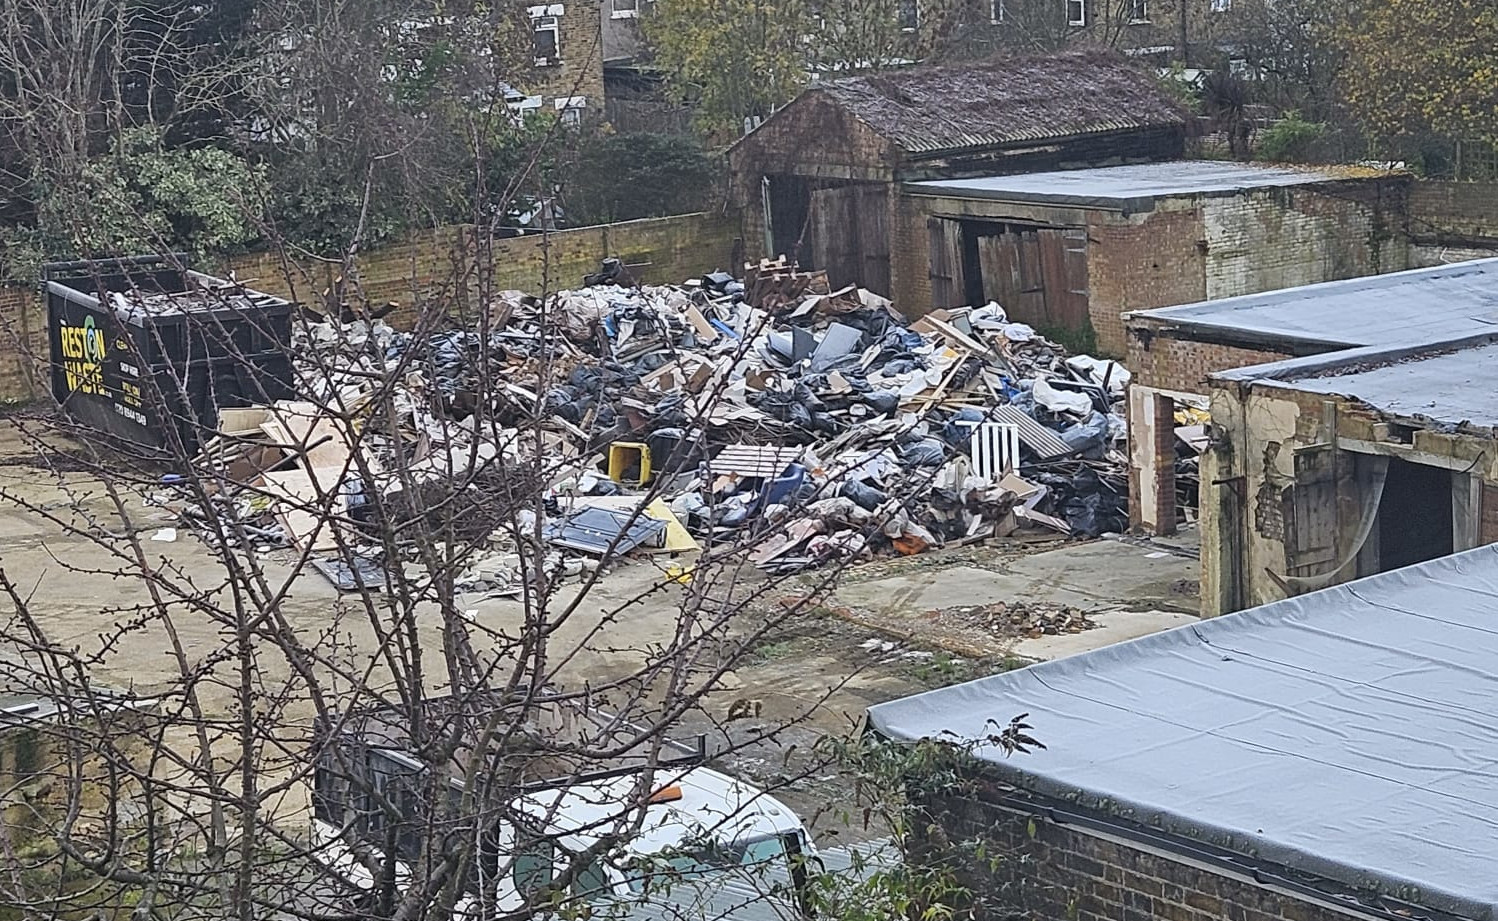 Chaos of using builders yard as Class B8